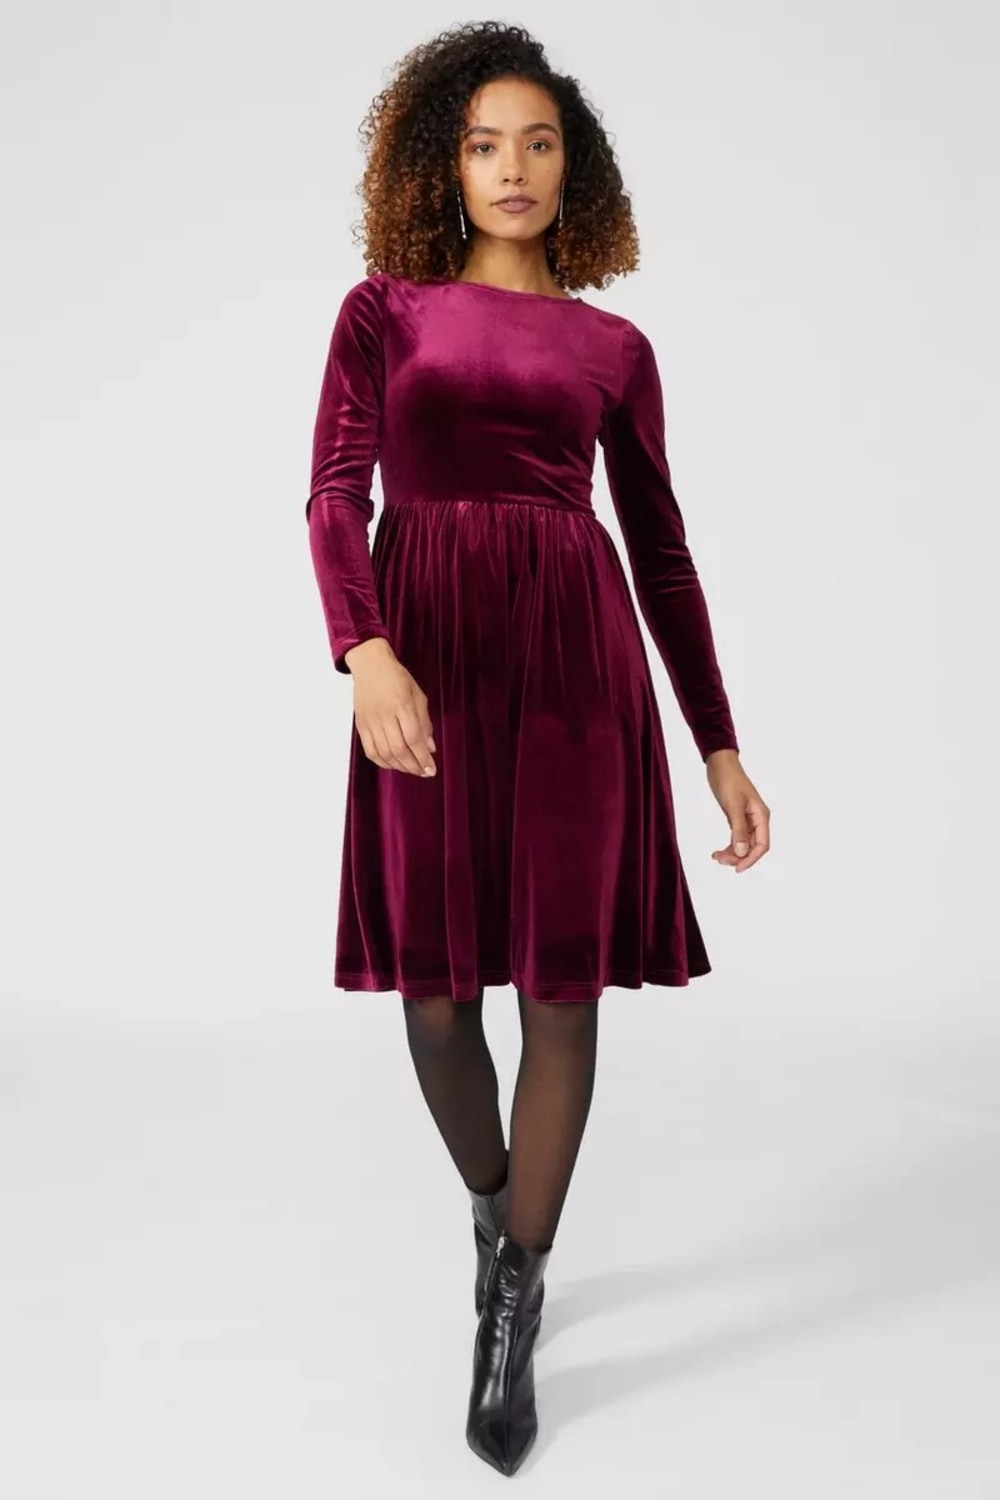 Womens/Ladies Fit & Flare Velvet Dress